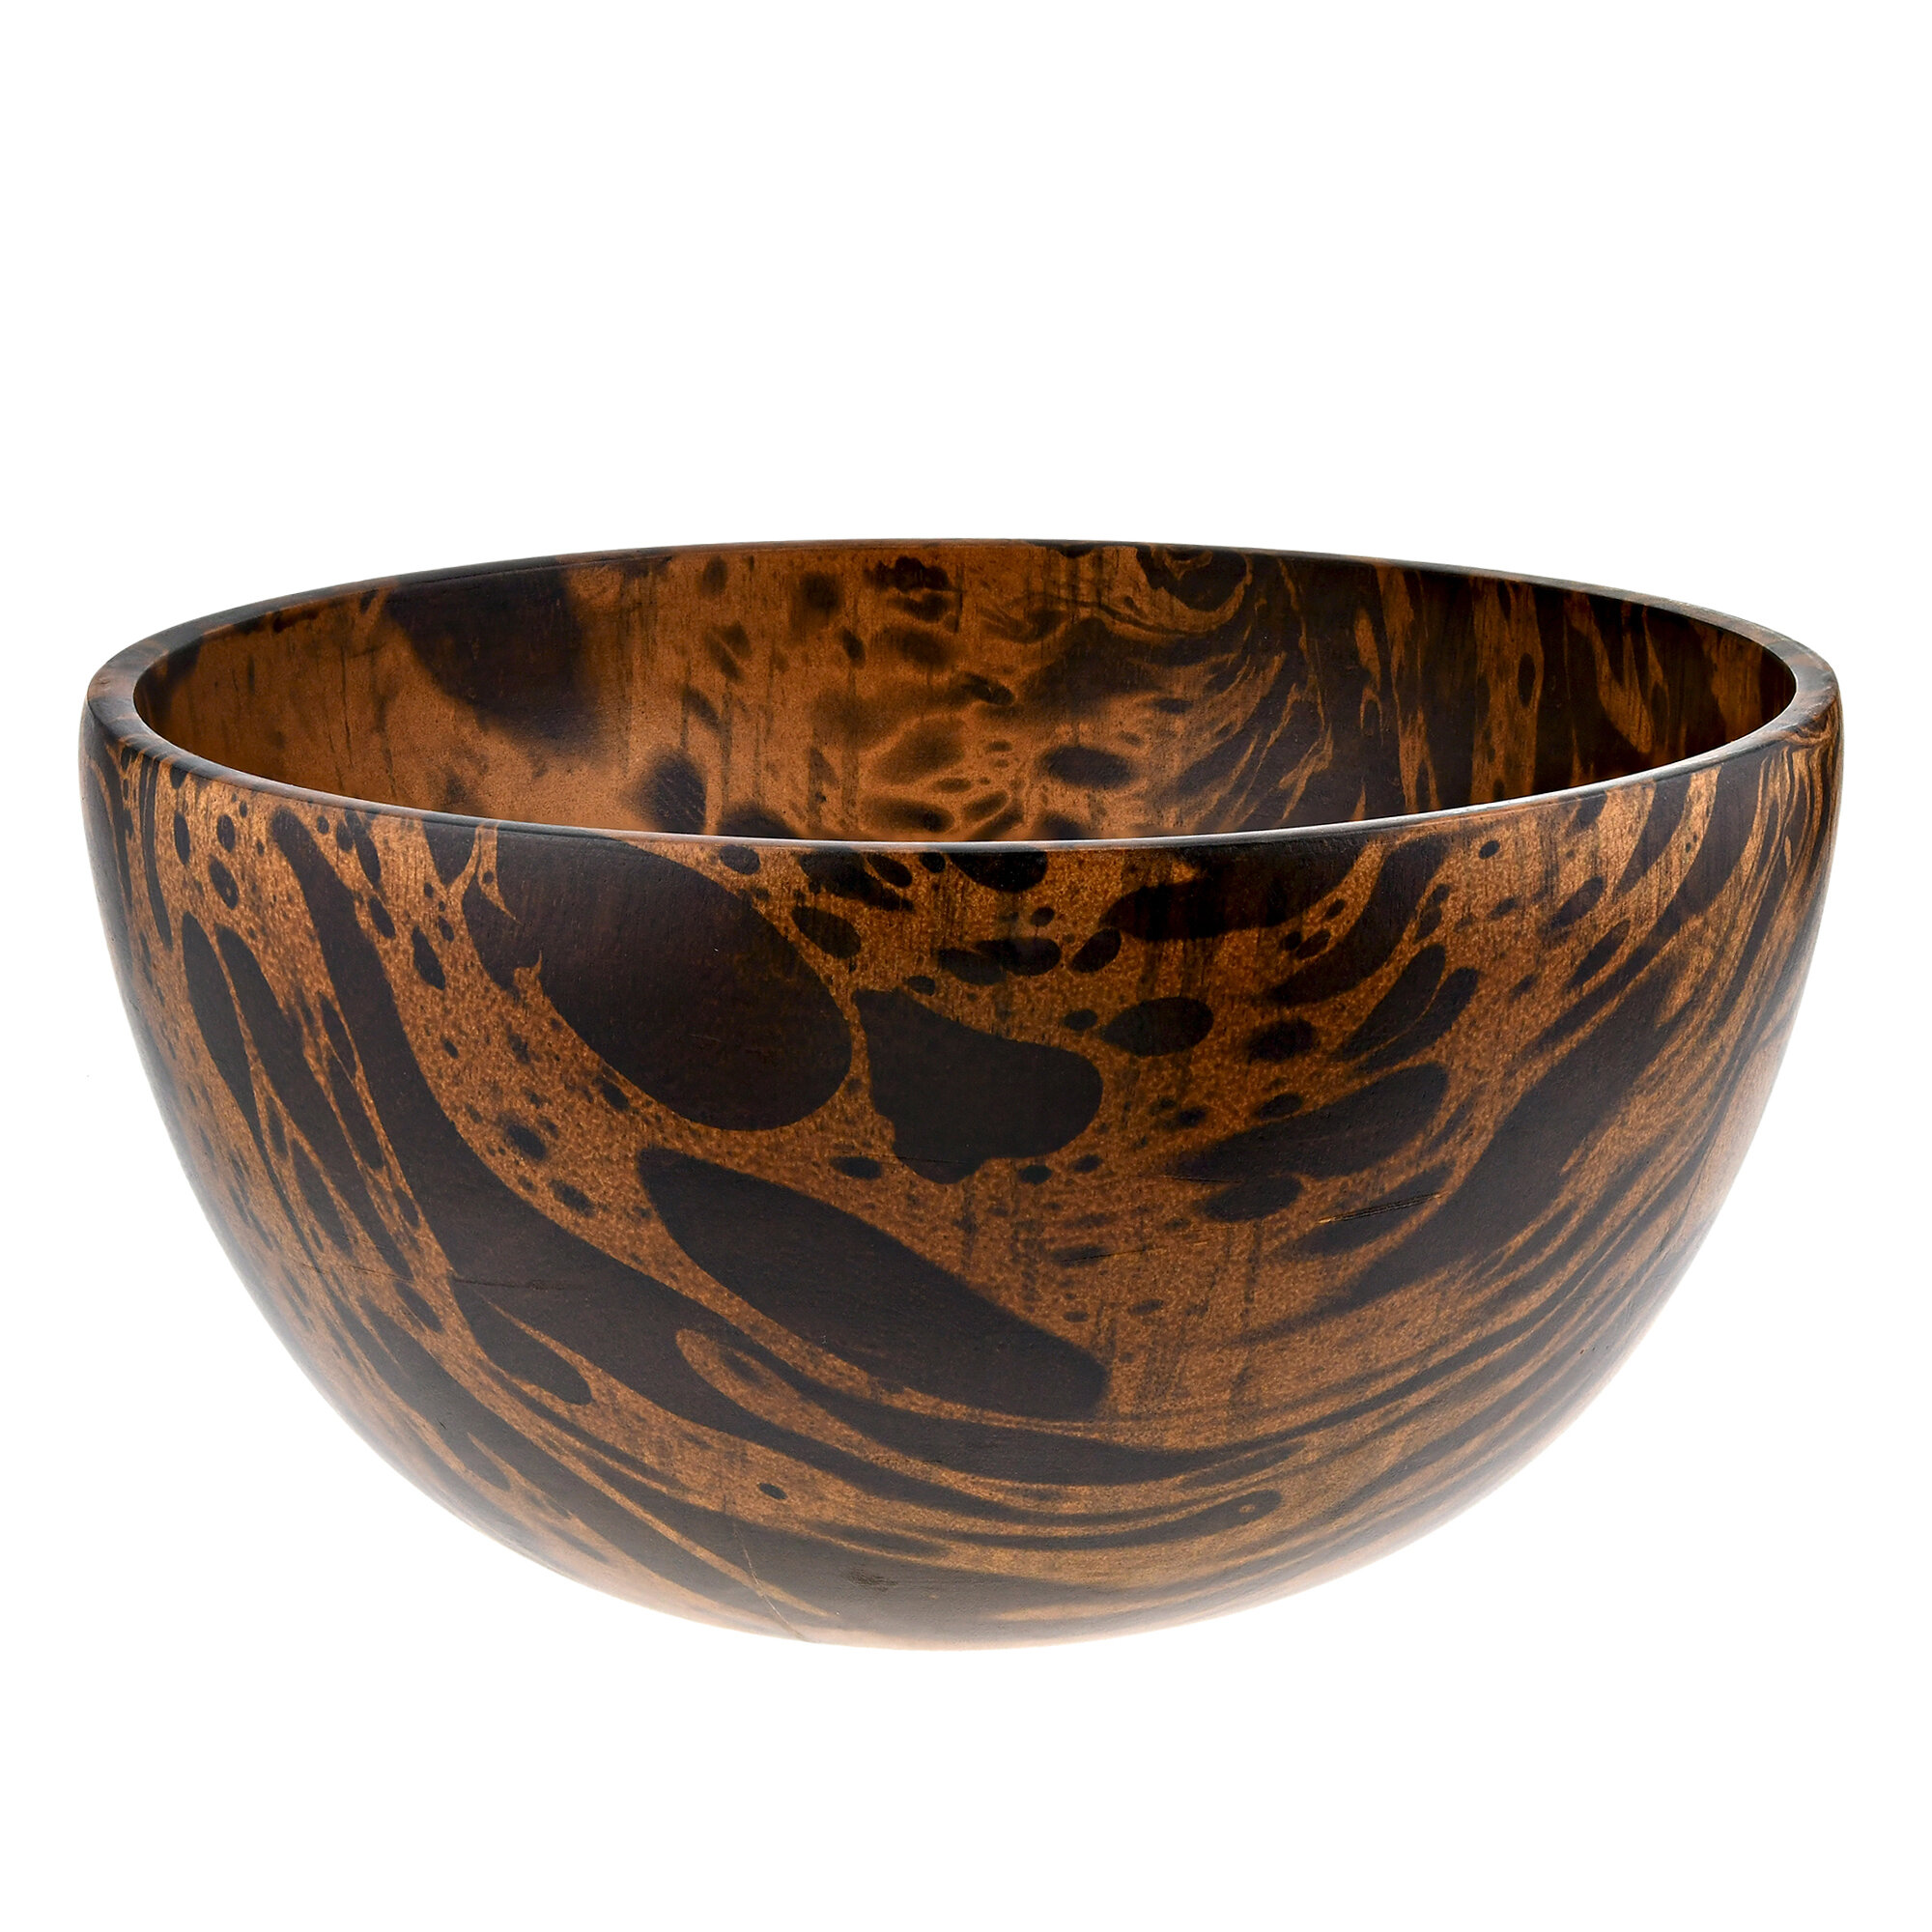 https://assets.wfcdn.com/im/17929687/compr-r85/1994/199428662/azal-handmade-wood-decorative-bowl.jpg